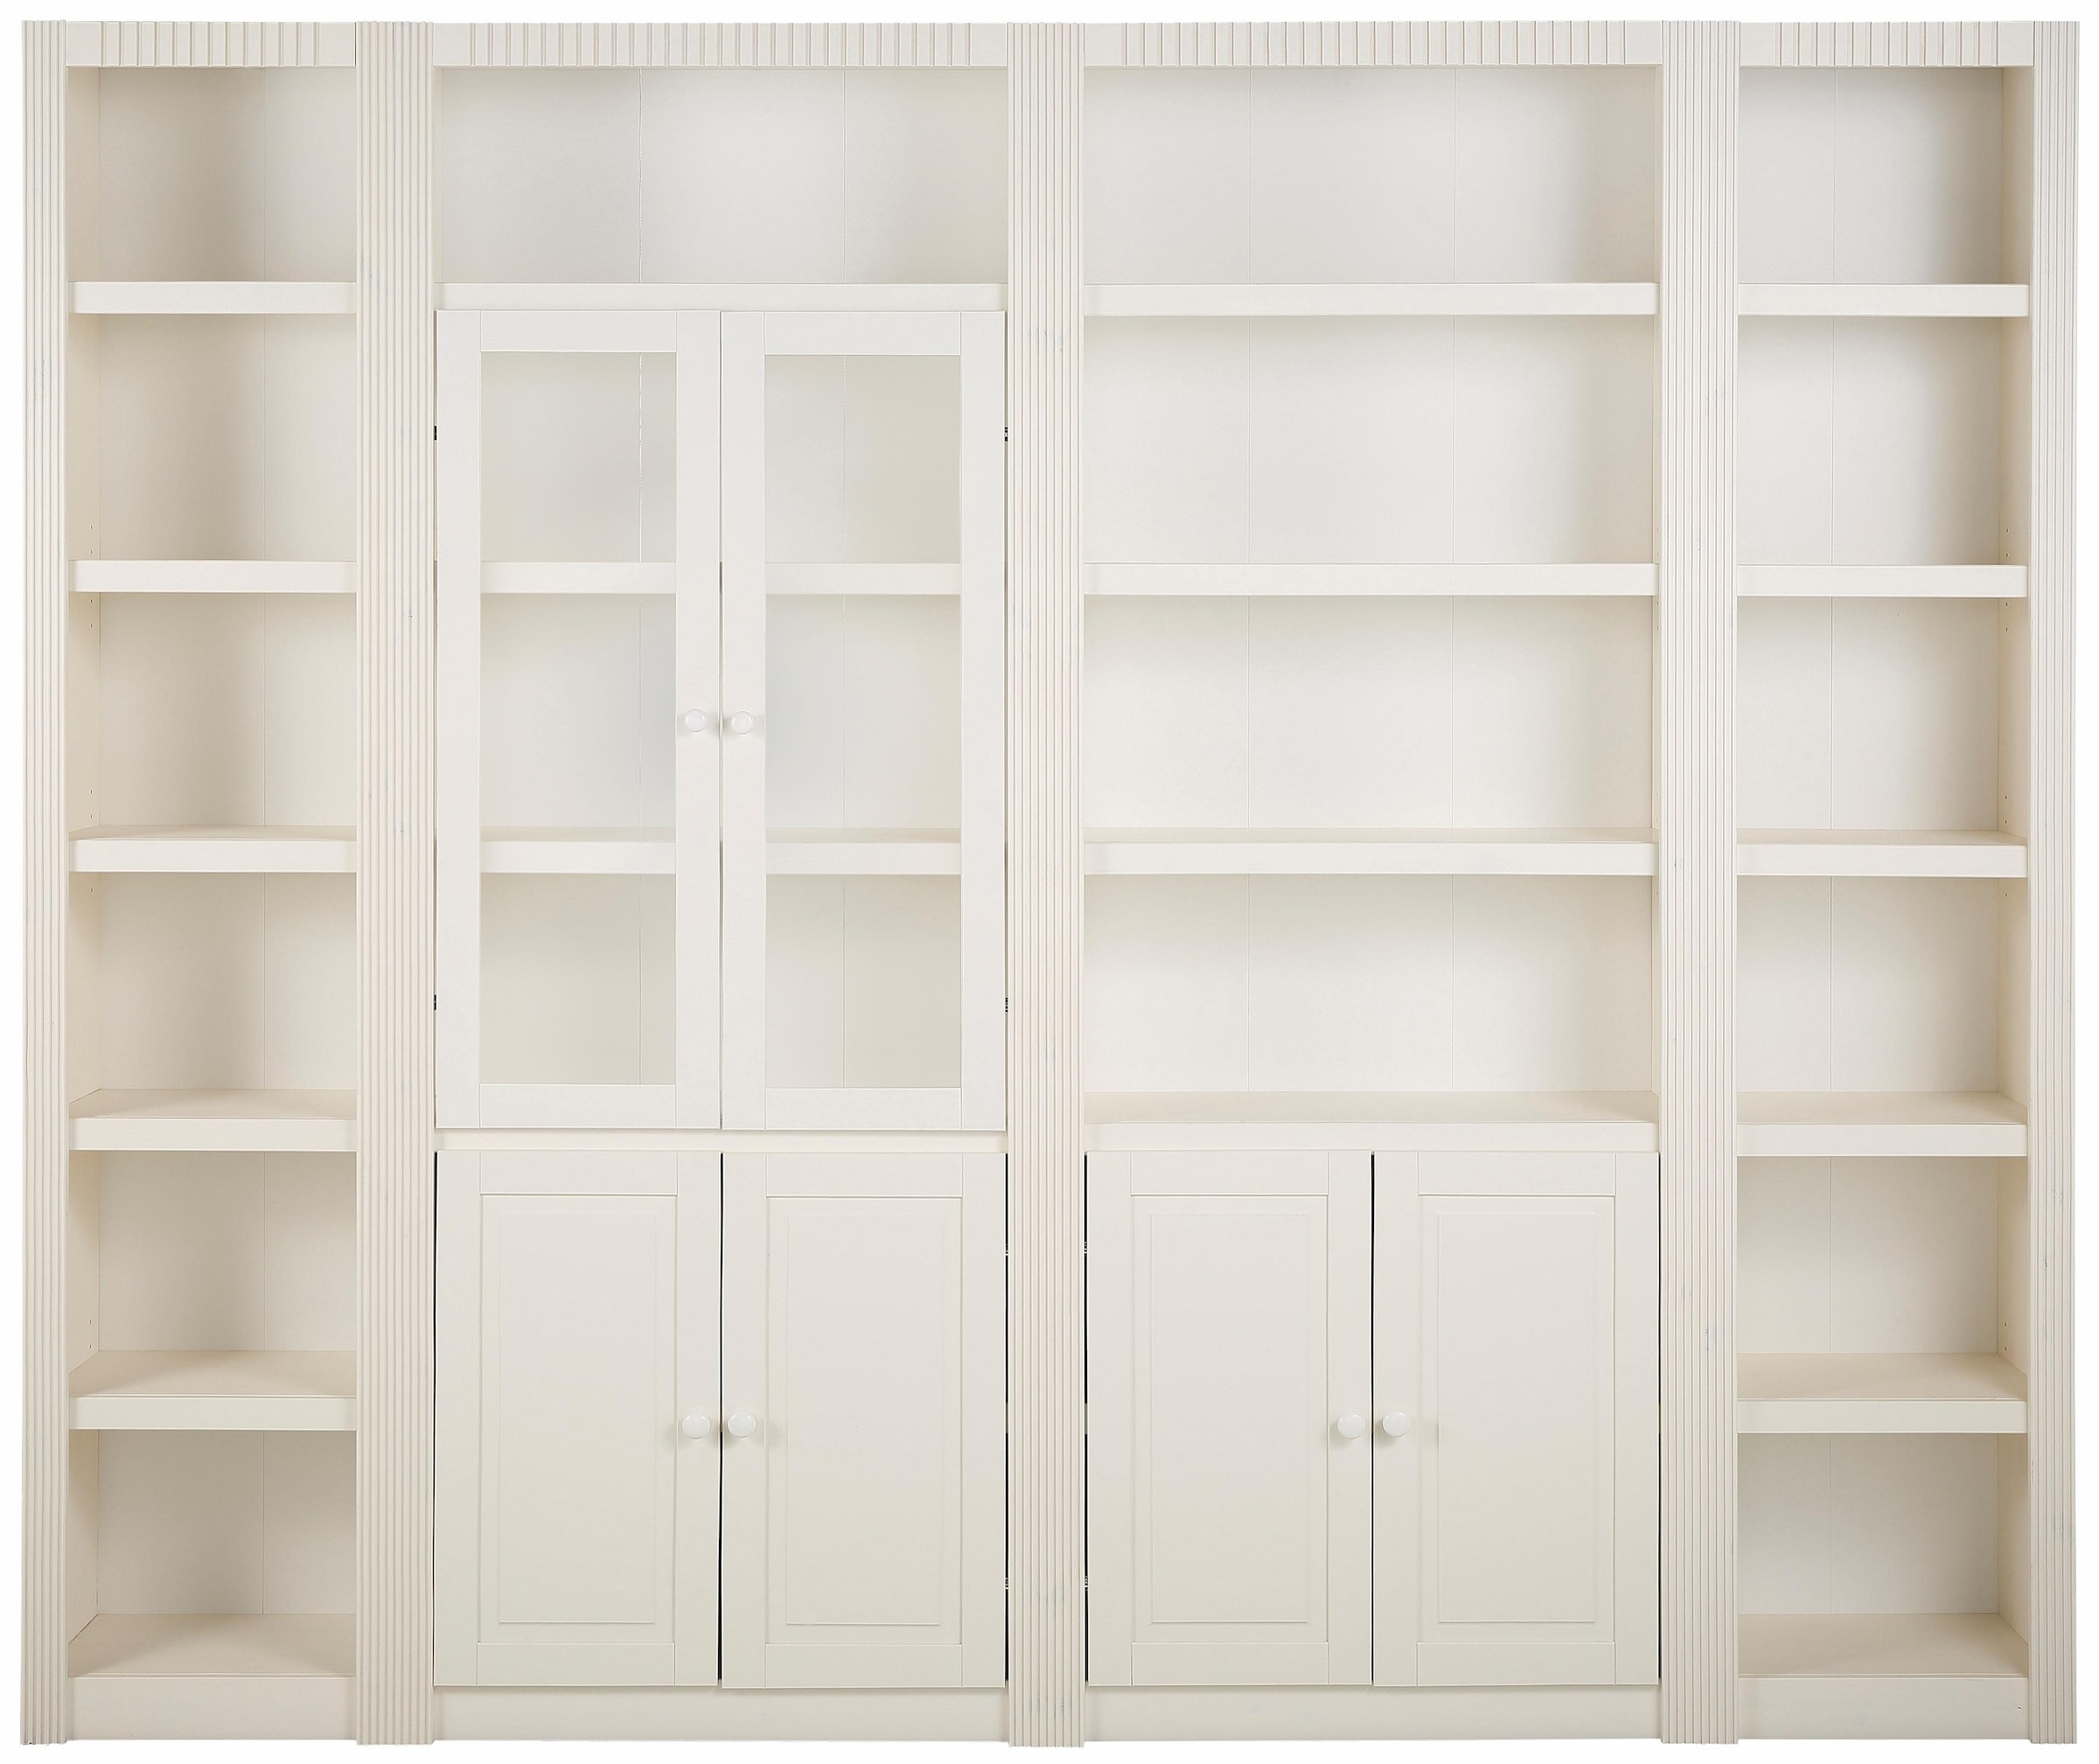 Home affaire Bücherwand »Bergen«, aus massivem schönen Kiefernholz, Breite 255 cm